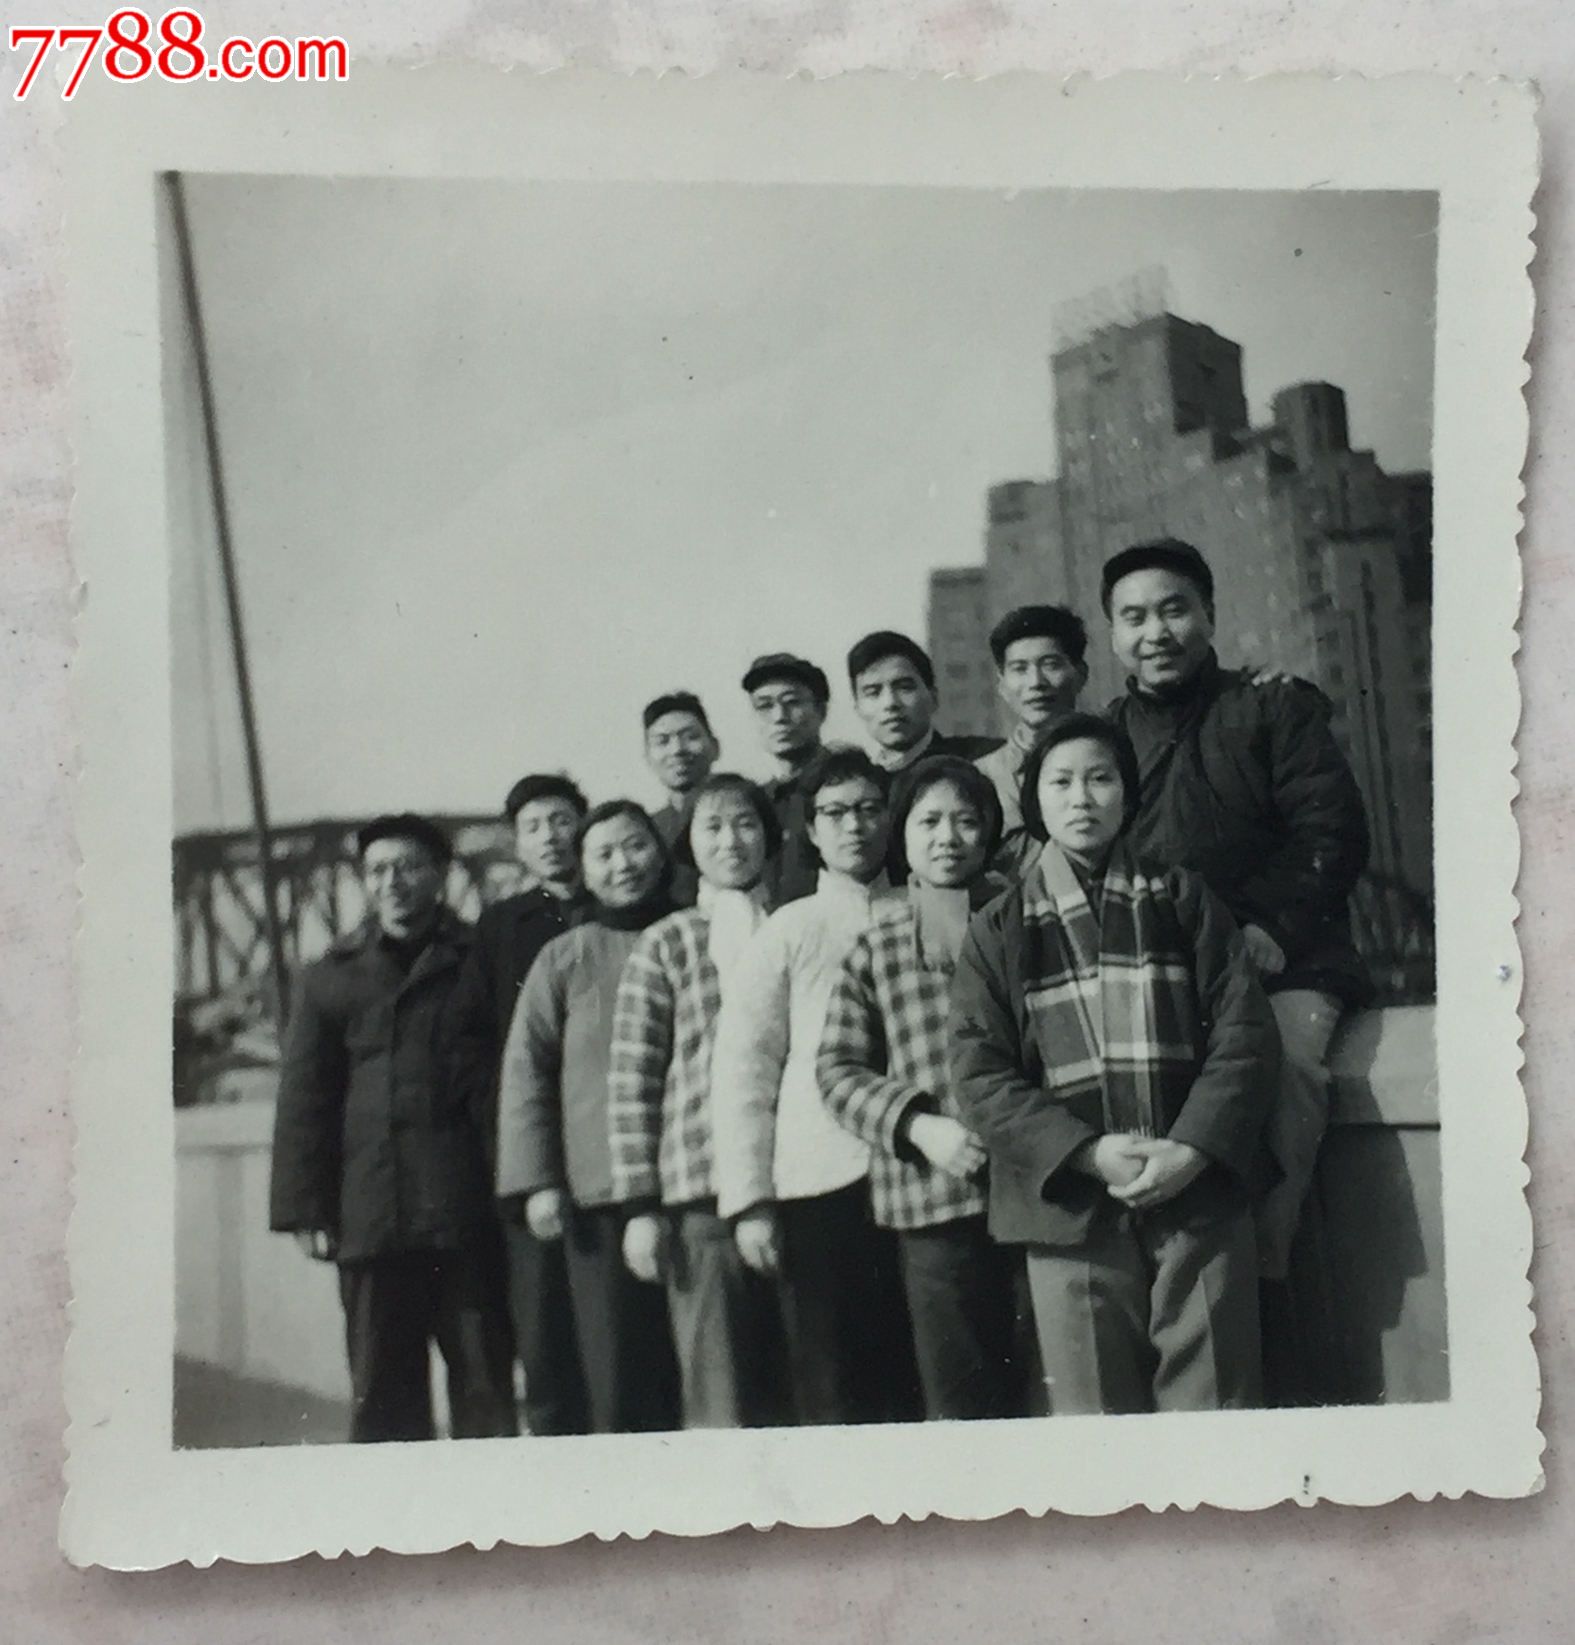 1966年中共上海外滩合影照_老照片_精文老照片收藏馆【7788收藏__中国